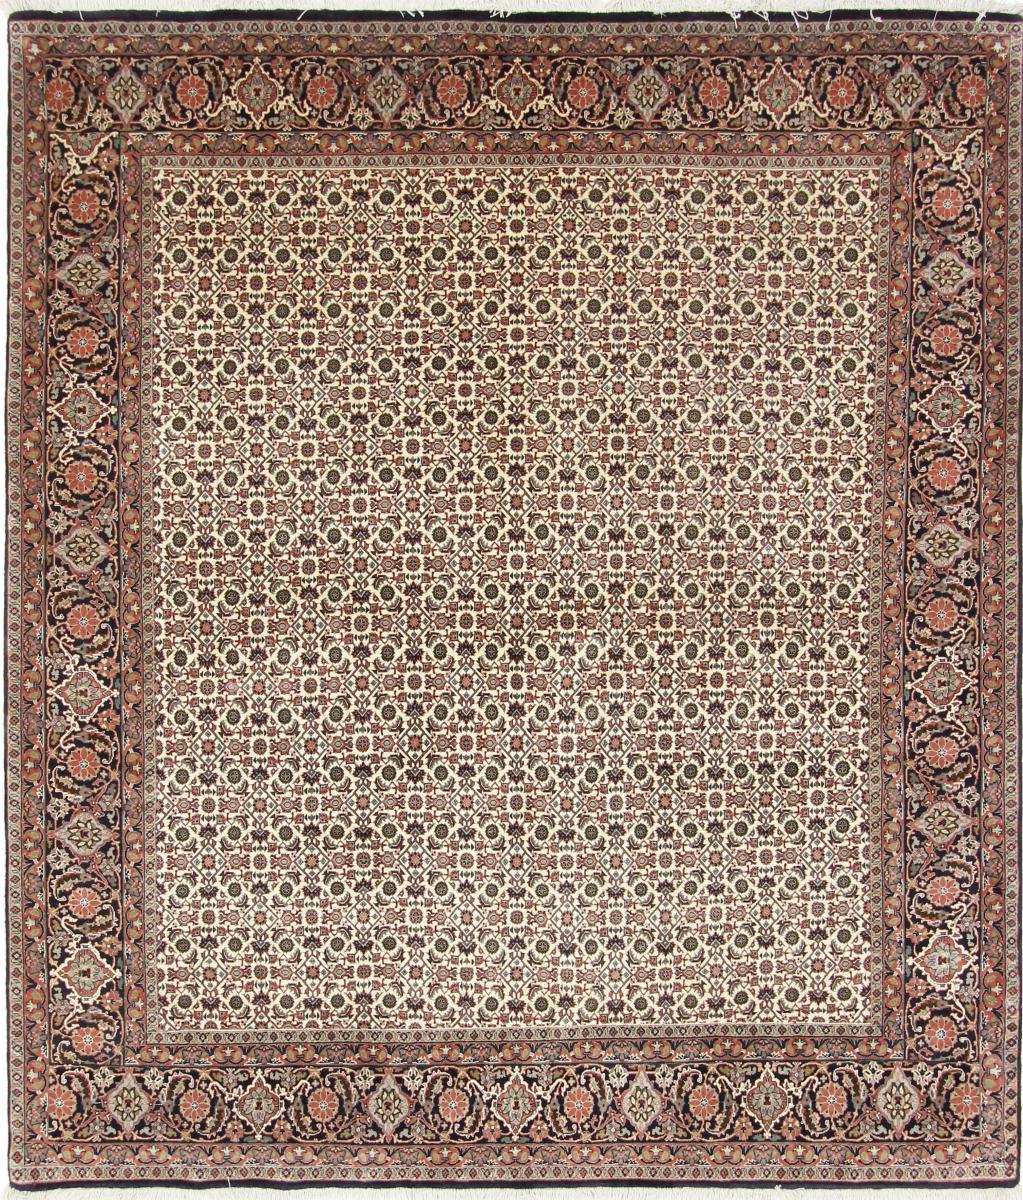  ペルシャ絨毯 ビジャー 244x211 244x211,  ペルシャ絨毯 手織り